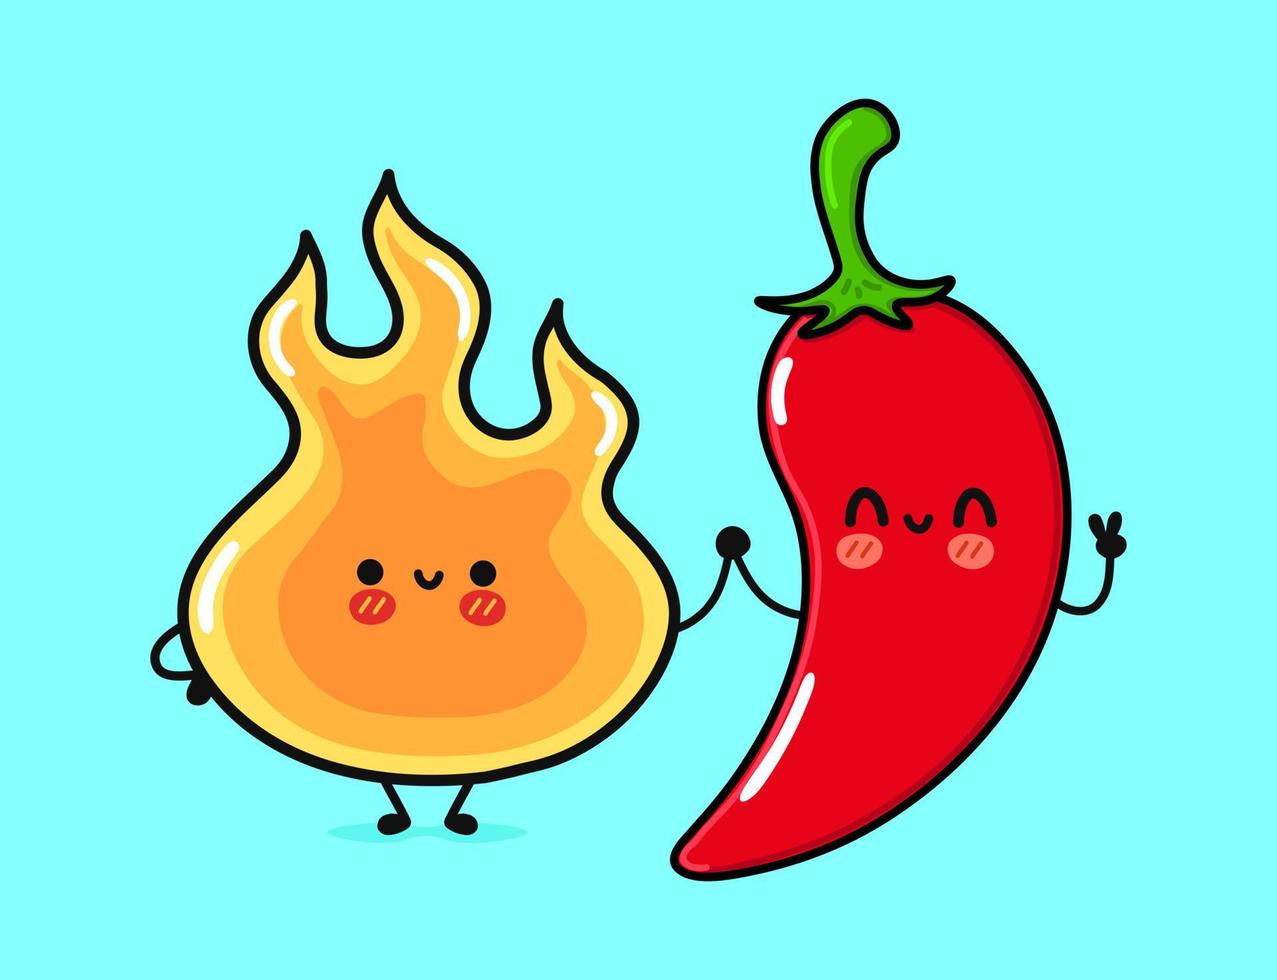 süßes, lustiges fröhliches Feuer und Chili-Pfeffer. Vektor handgezeichnete kawaii Zeichentrickfiguren, Illustrationssymbol. lustiges karikaturfeuer- und chili-pfeffer-maskottchen-charakterkonzept